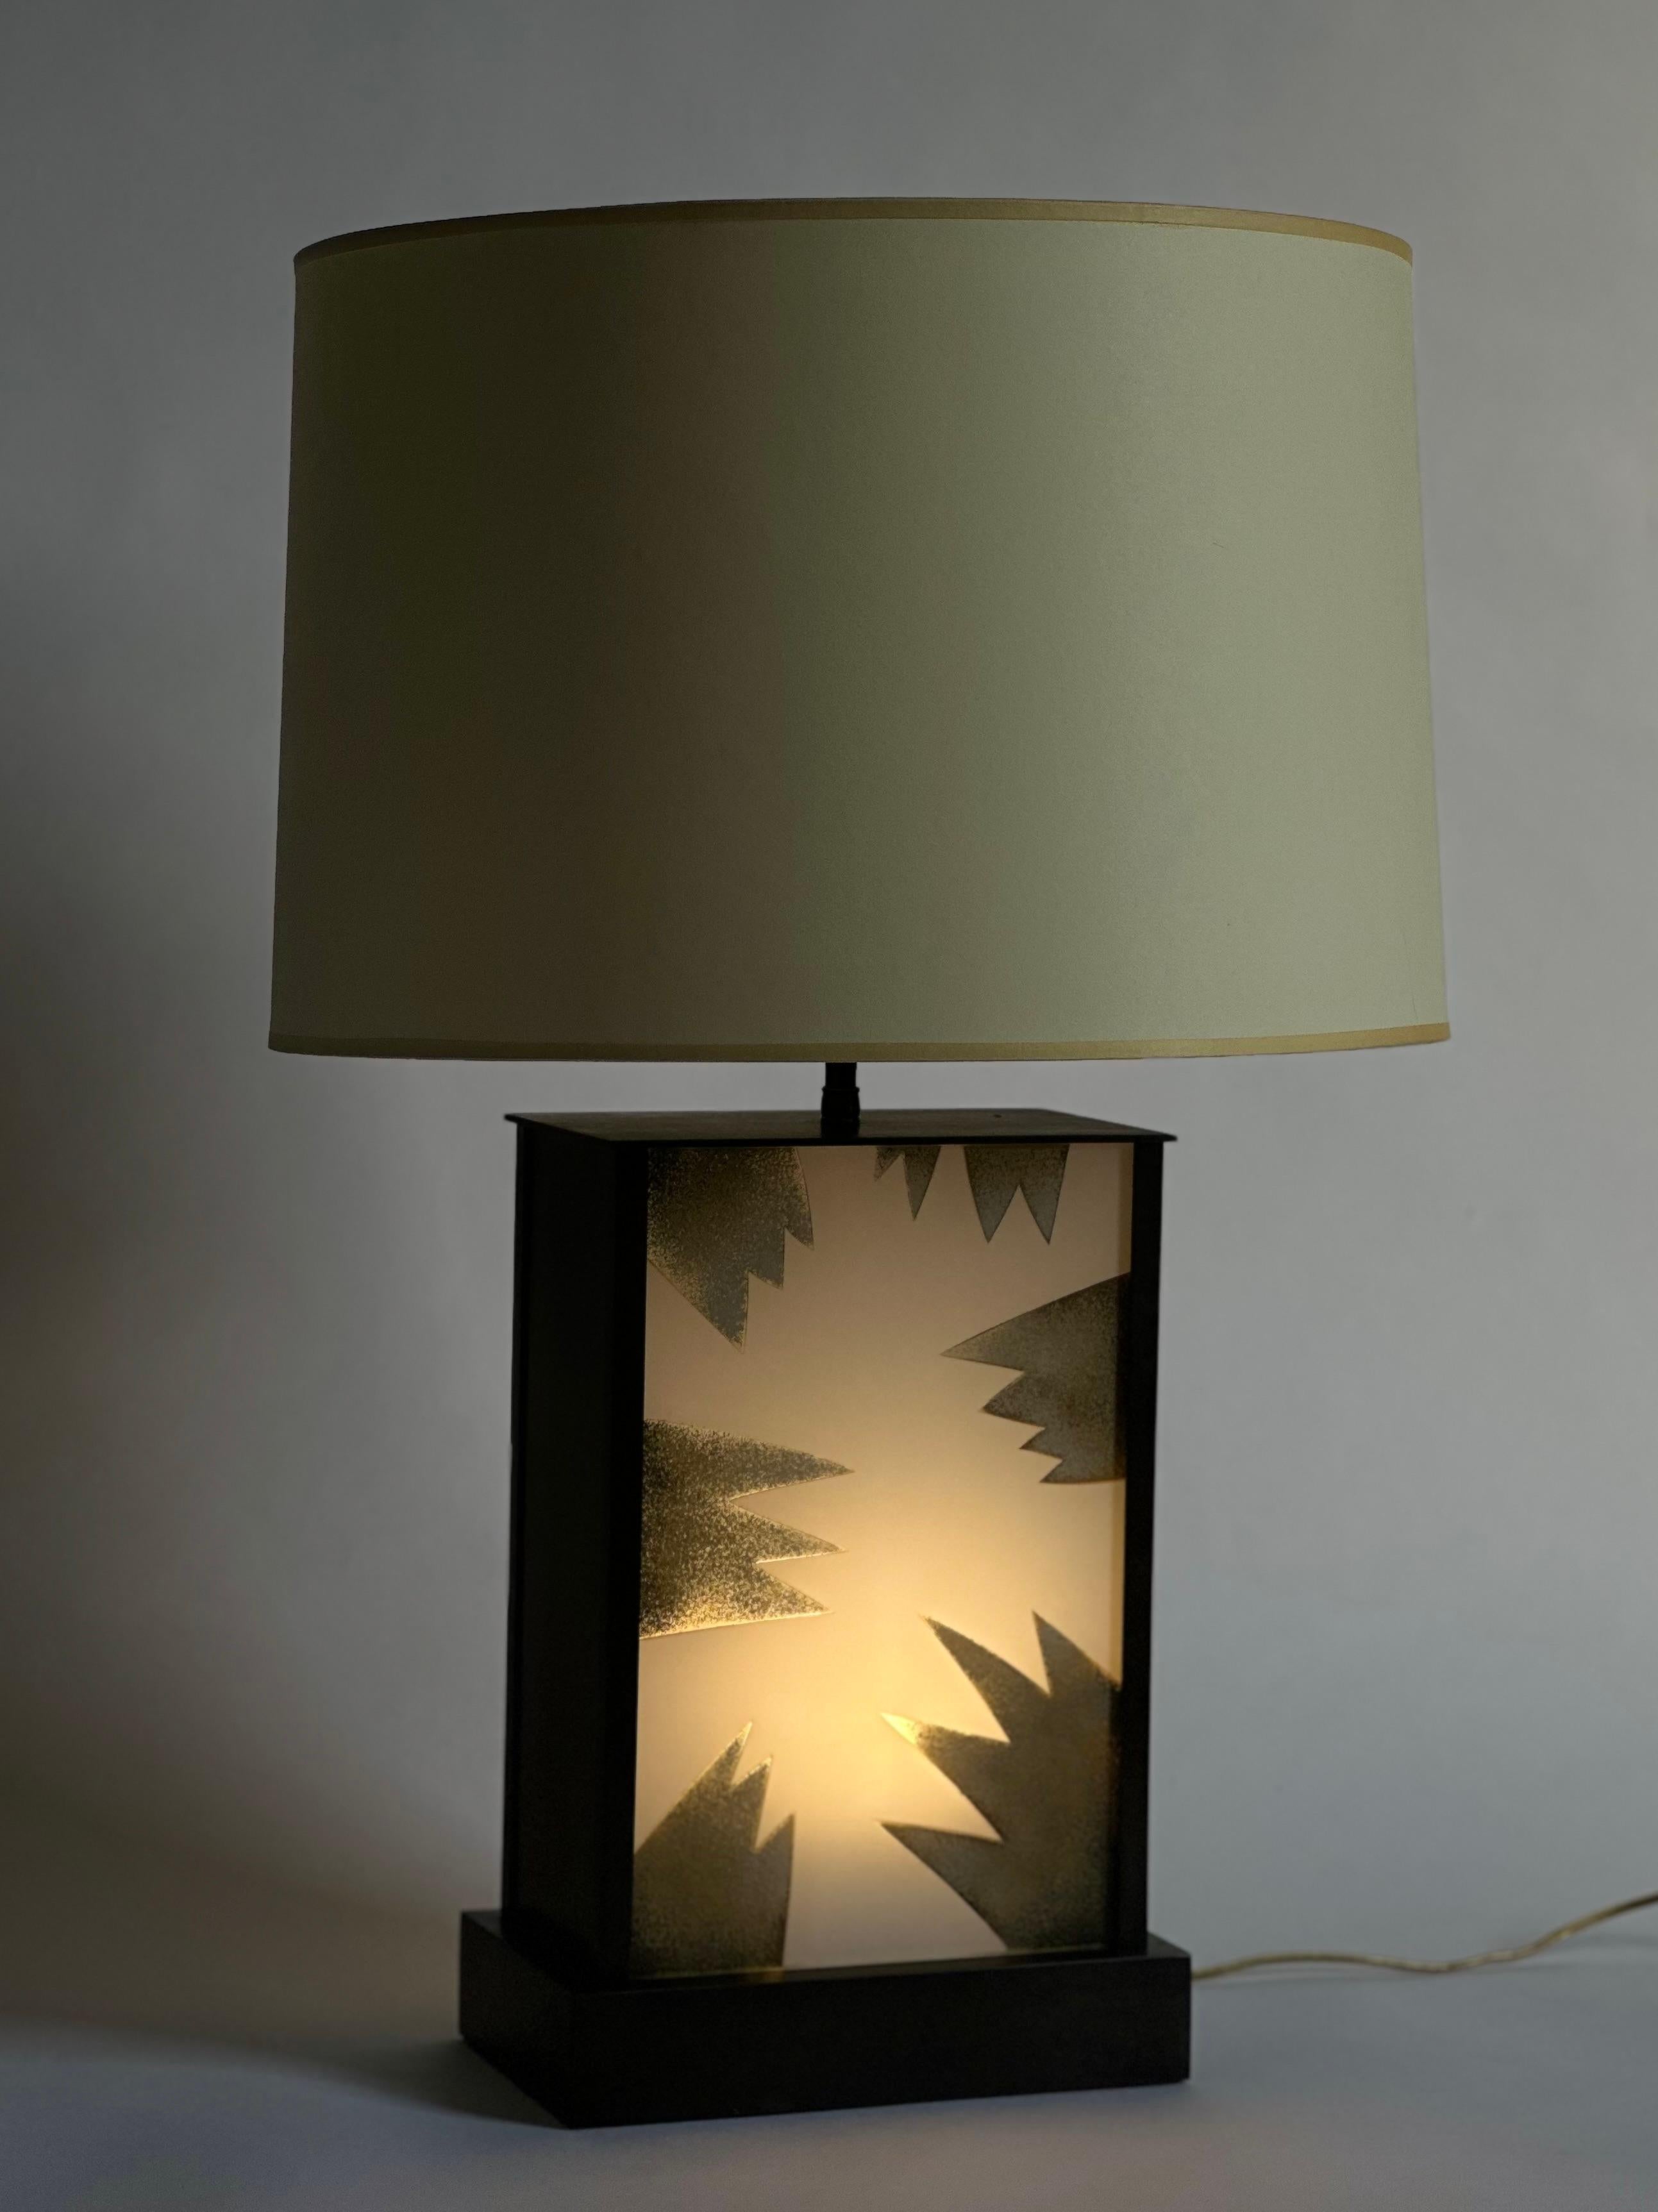 Une lampe de table moderne inhabituelle composée d'une base rectangulaire en bronze ou en métal bronzé qui éclaire deux panneaux de verre gravés et peints à l'envers (le motif du design est le même des deux côtés). La base peut être allumée